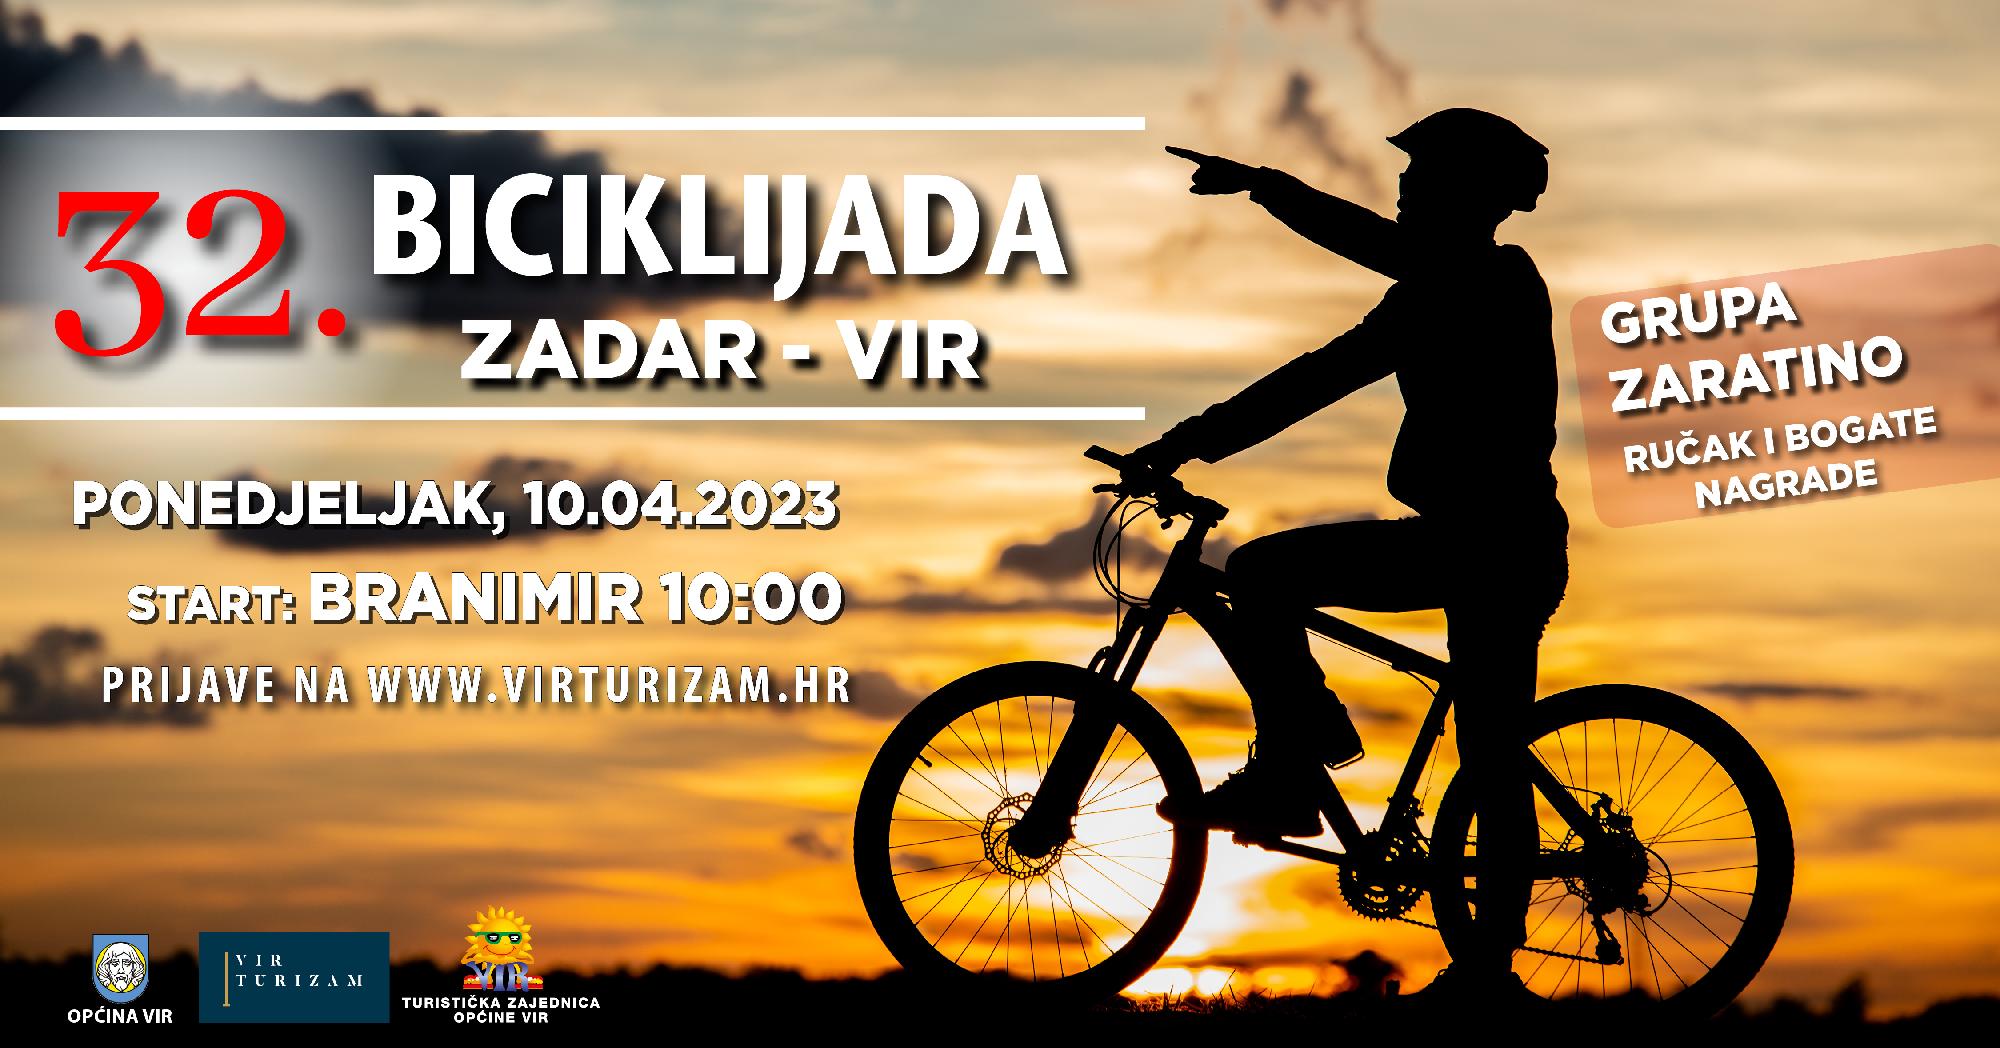 32. Biciklijada Zadar - Vir - ONLINE PRIJAVE